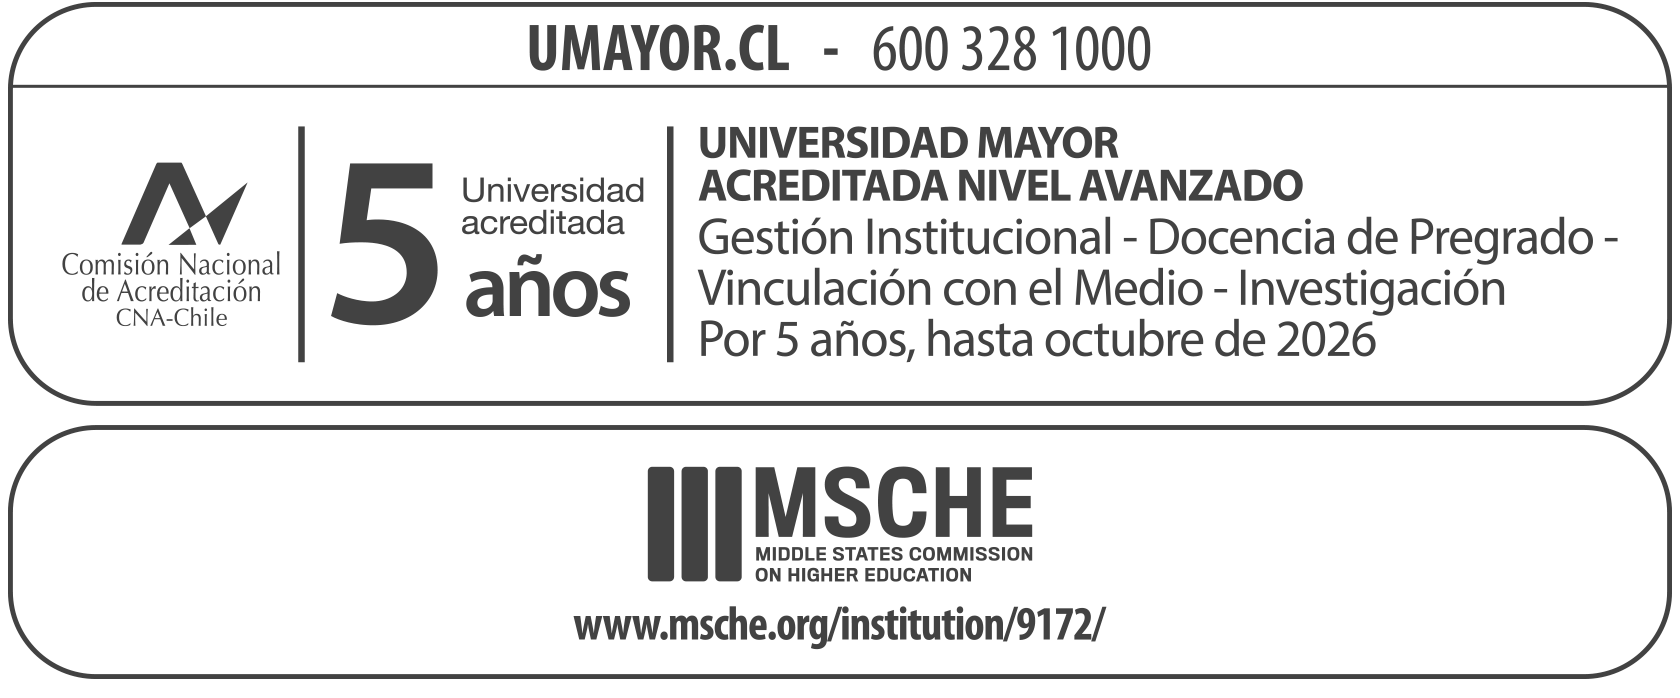 Acreditación - Universidad Mayor